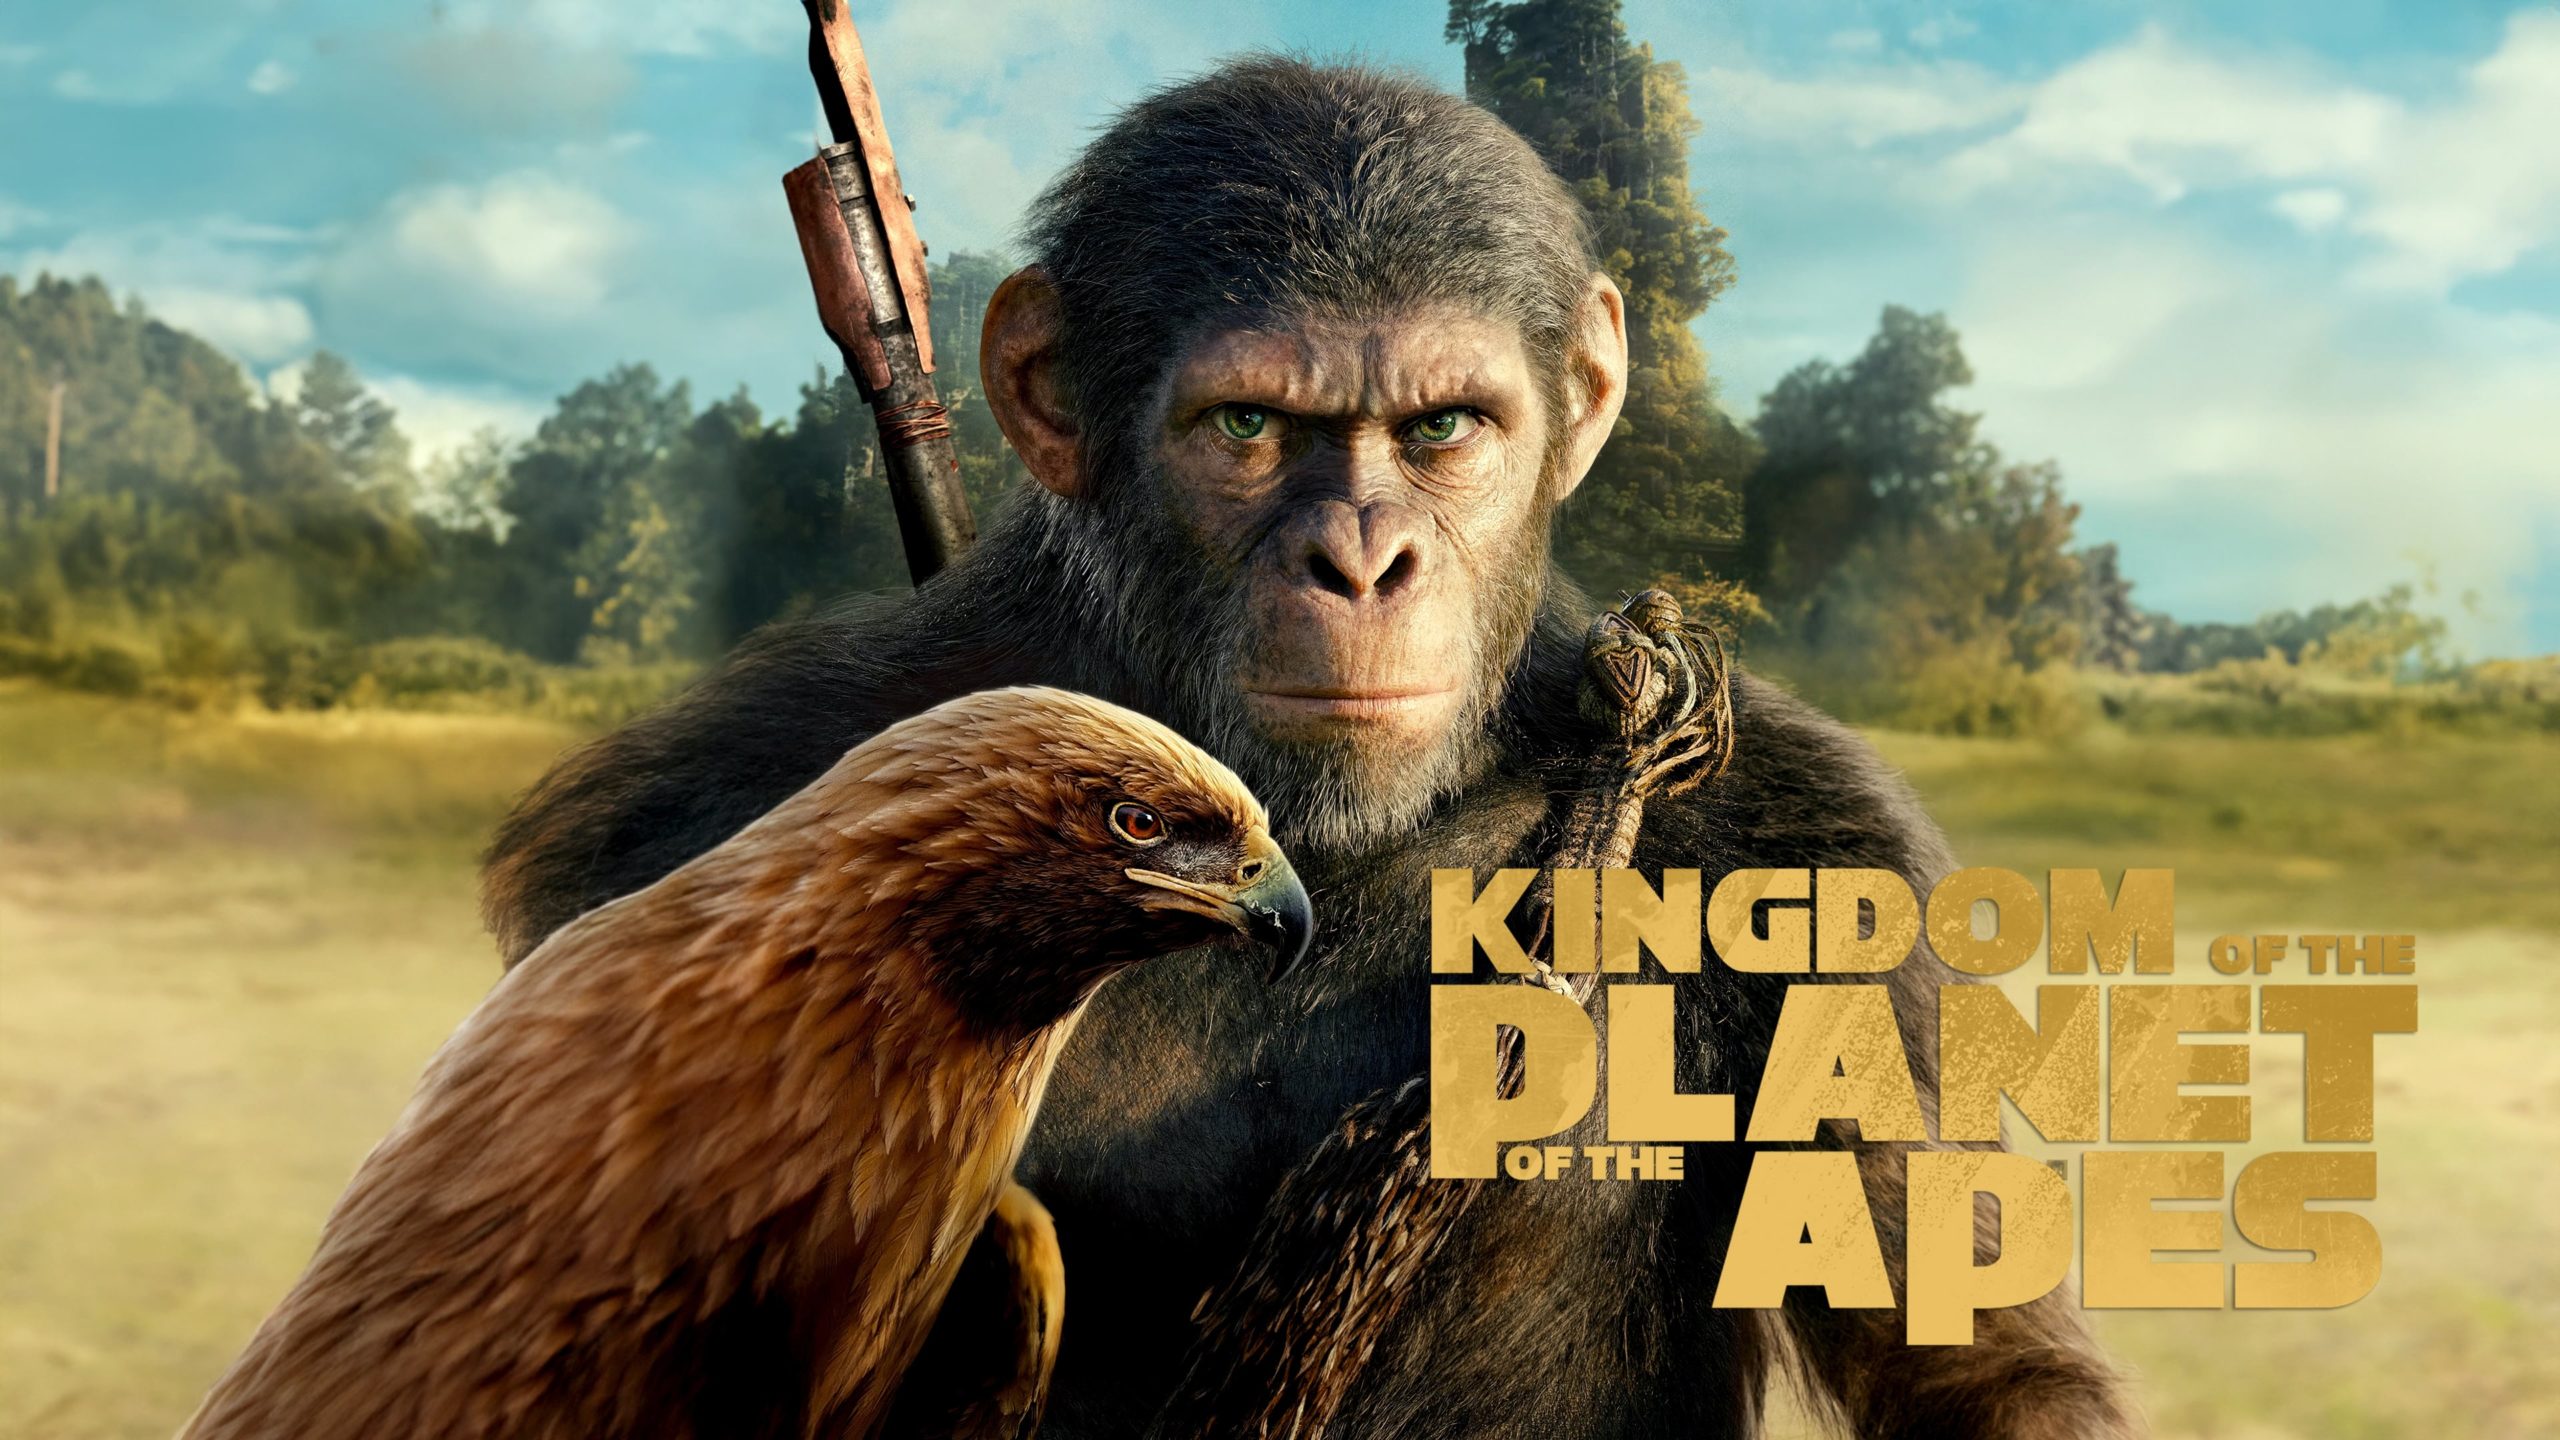 فيلم Kingdom of the Planet of the Apes